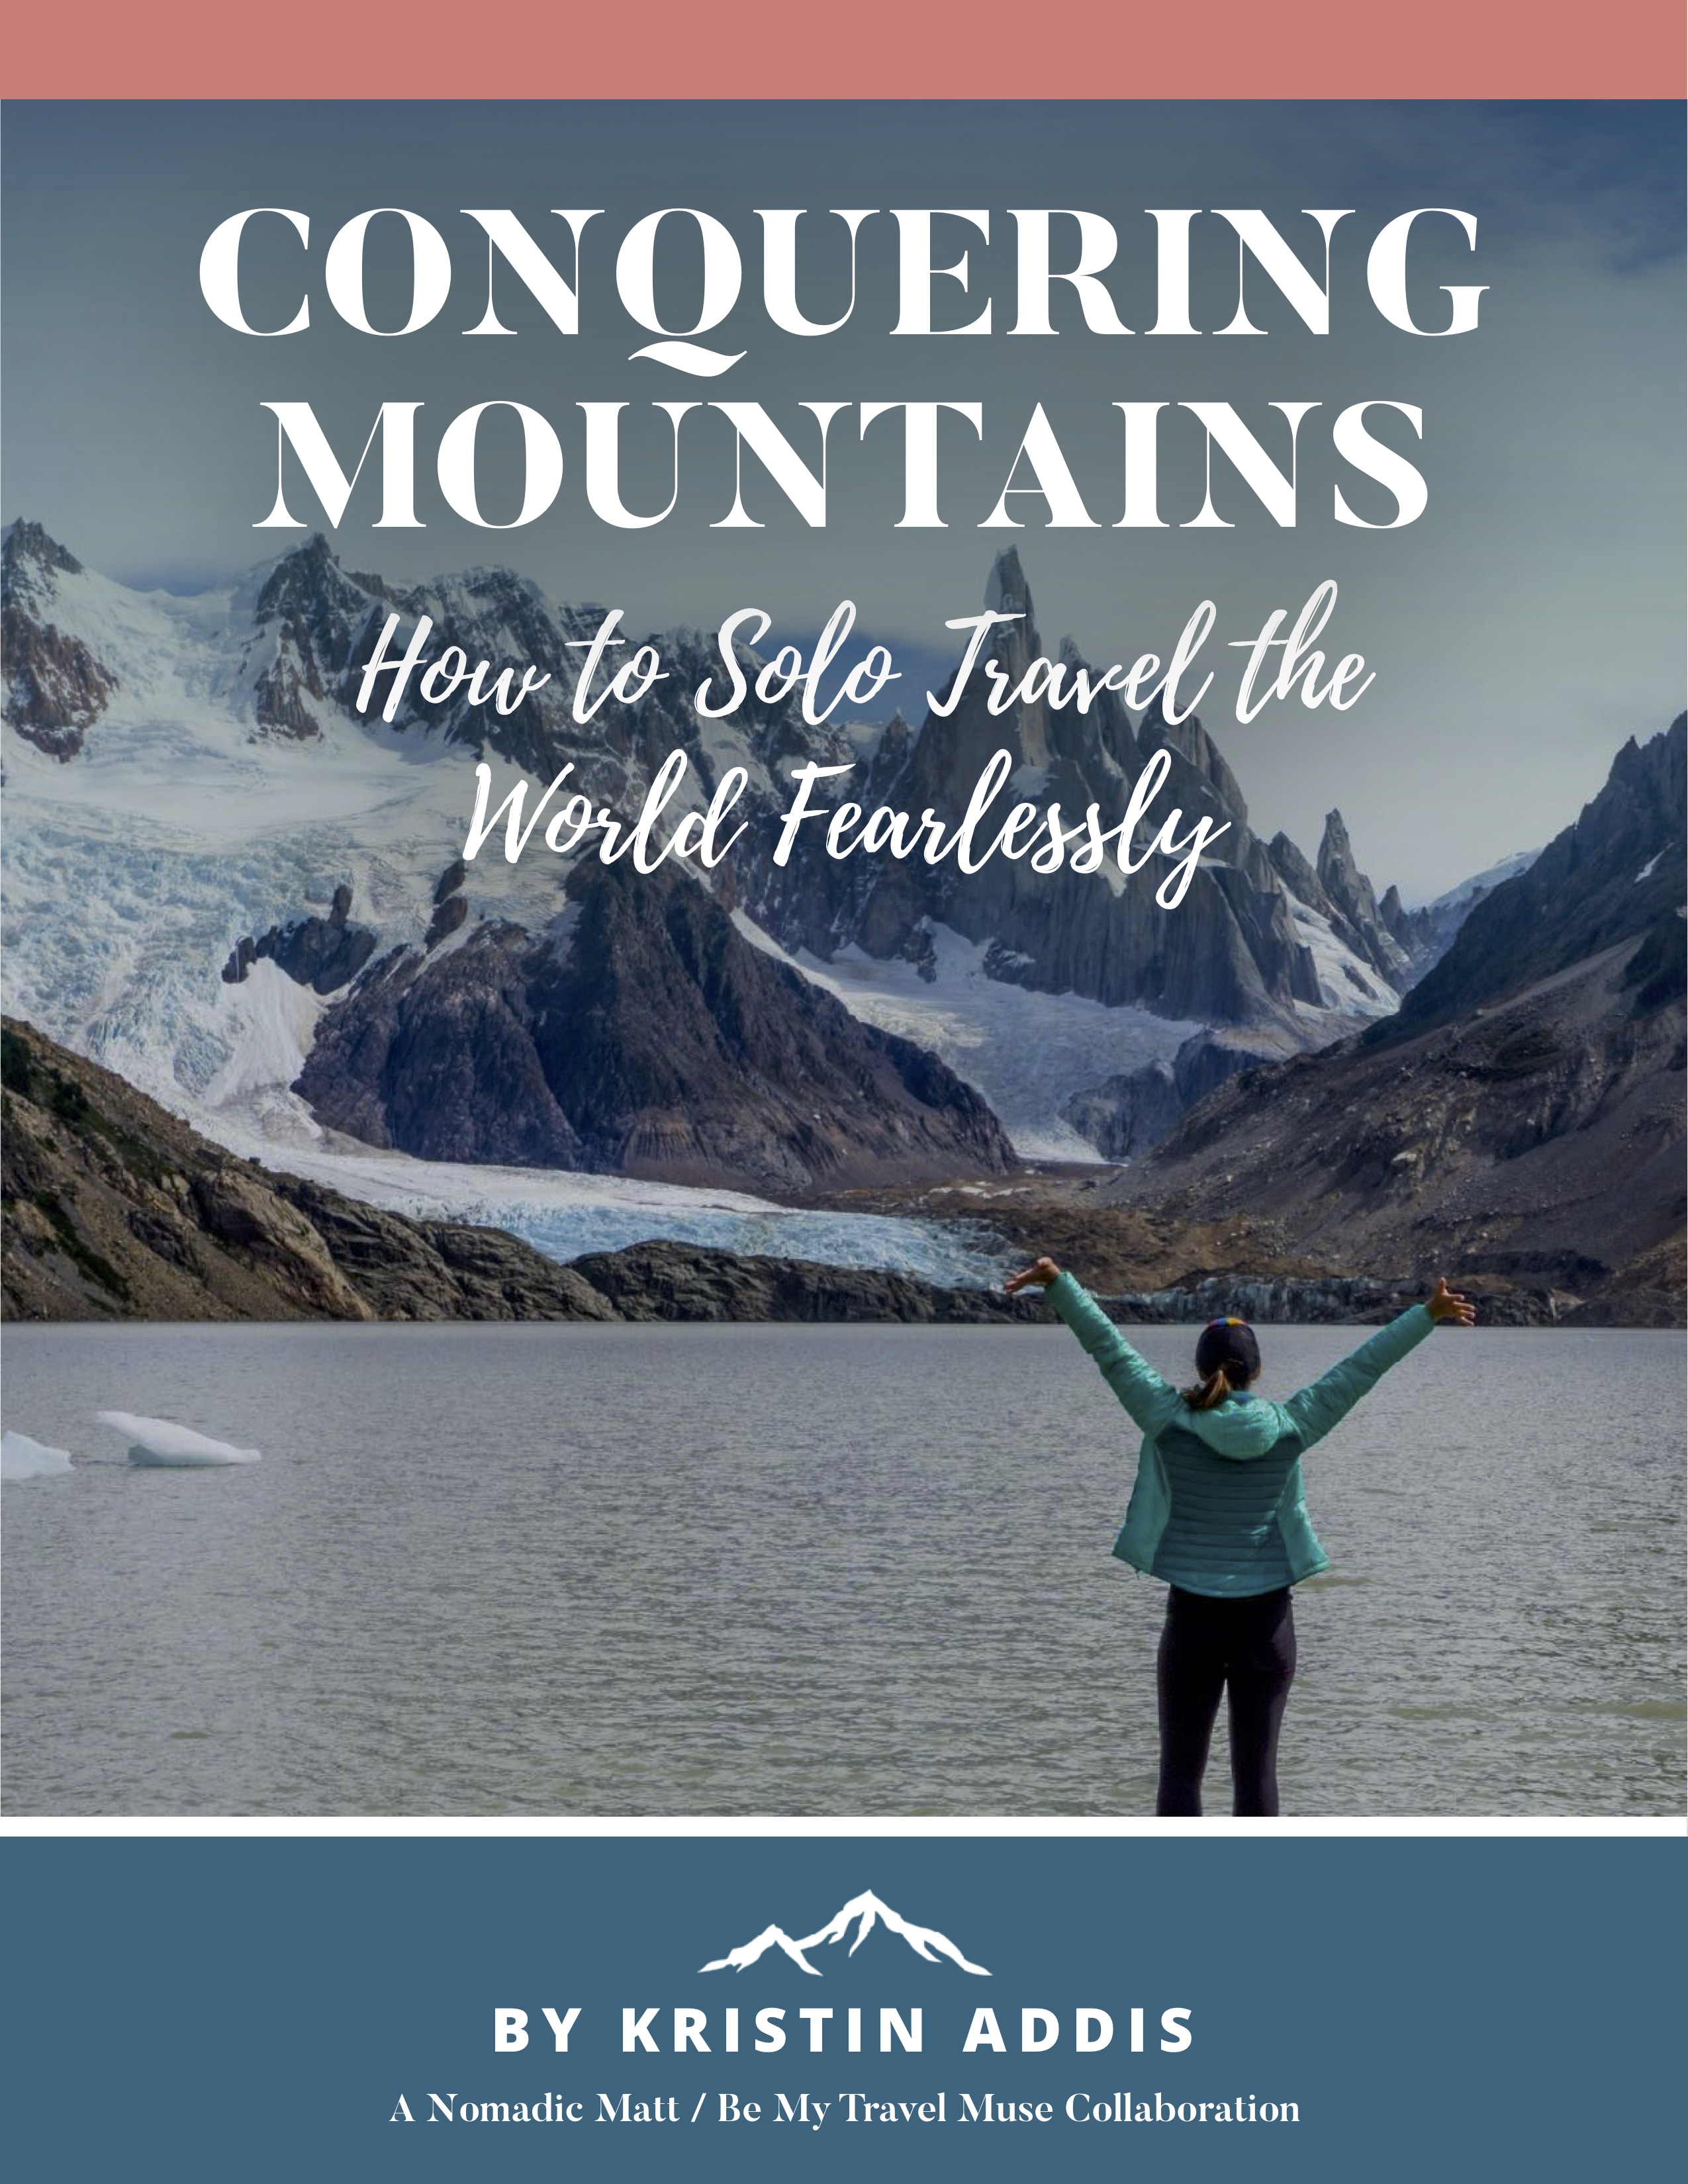 Чтобы получить полное руководство по самостоятельному путешествию женщин, ознакомьтесь с новой книгой Кристин « Покоряя горы»